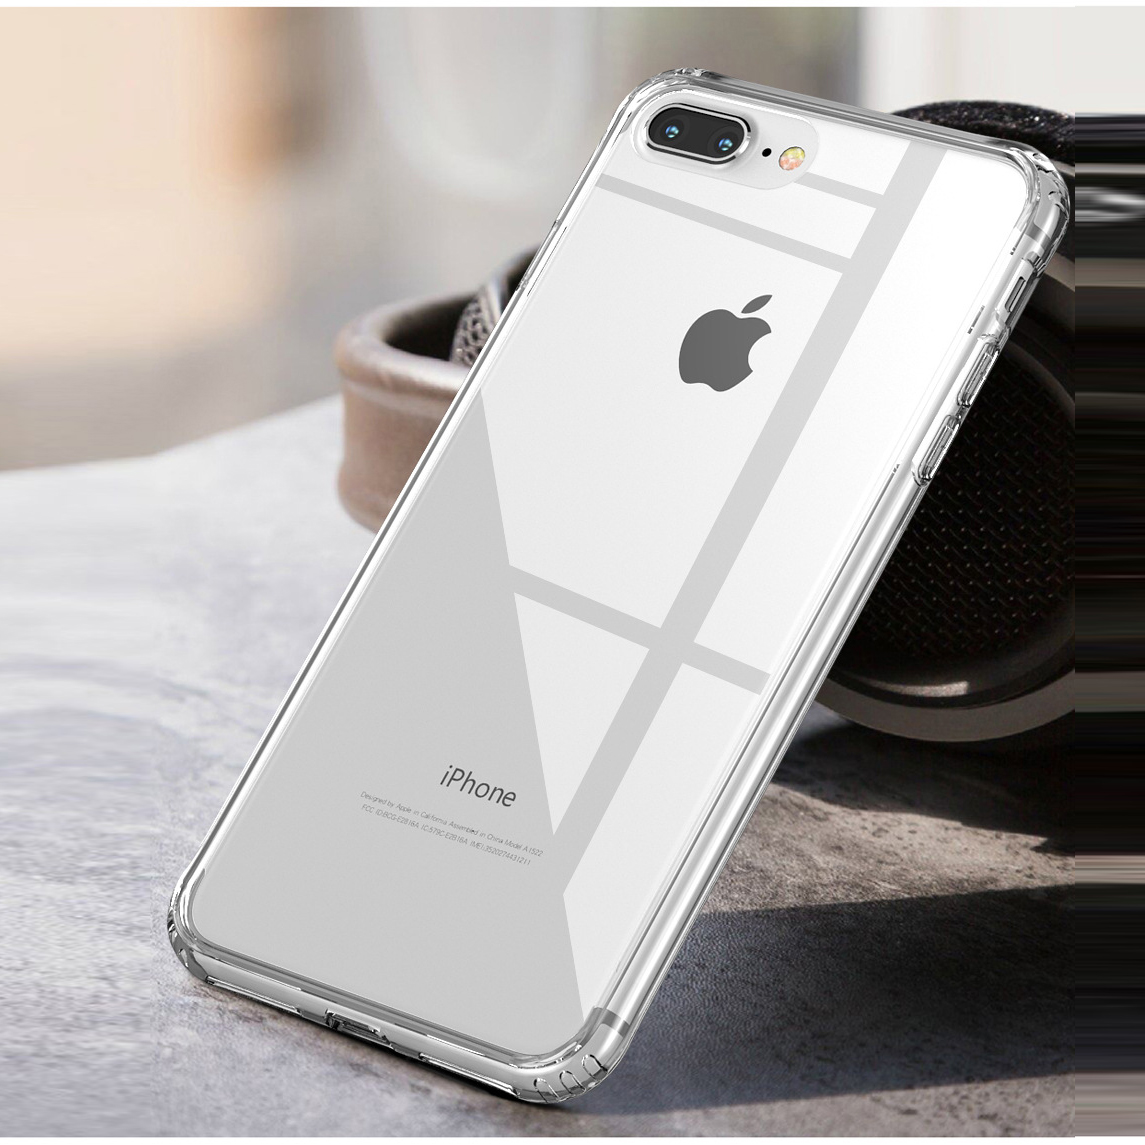 Ốp lưng silicon chống sốc cho iPhone 7 Plus / iPhone 8 Plus hiệu Likgus Crashproof (siêu mỏng, chống chịu mọi va đập) - Hàng nhập khẩu